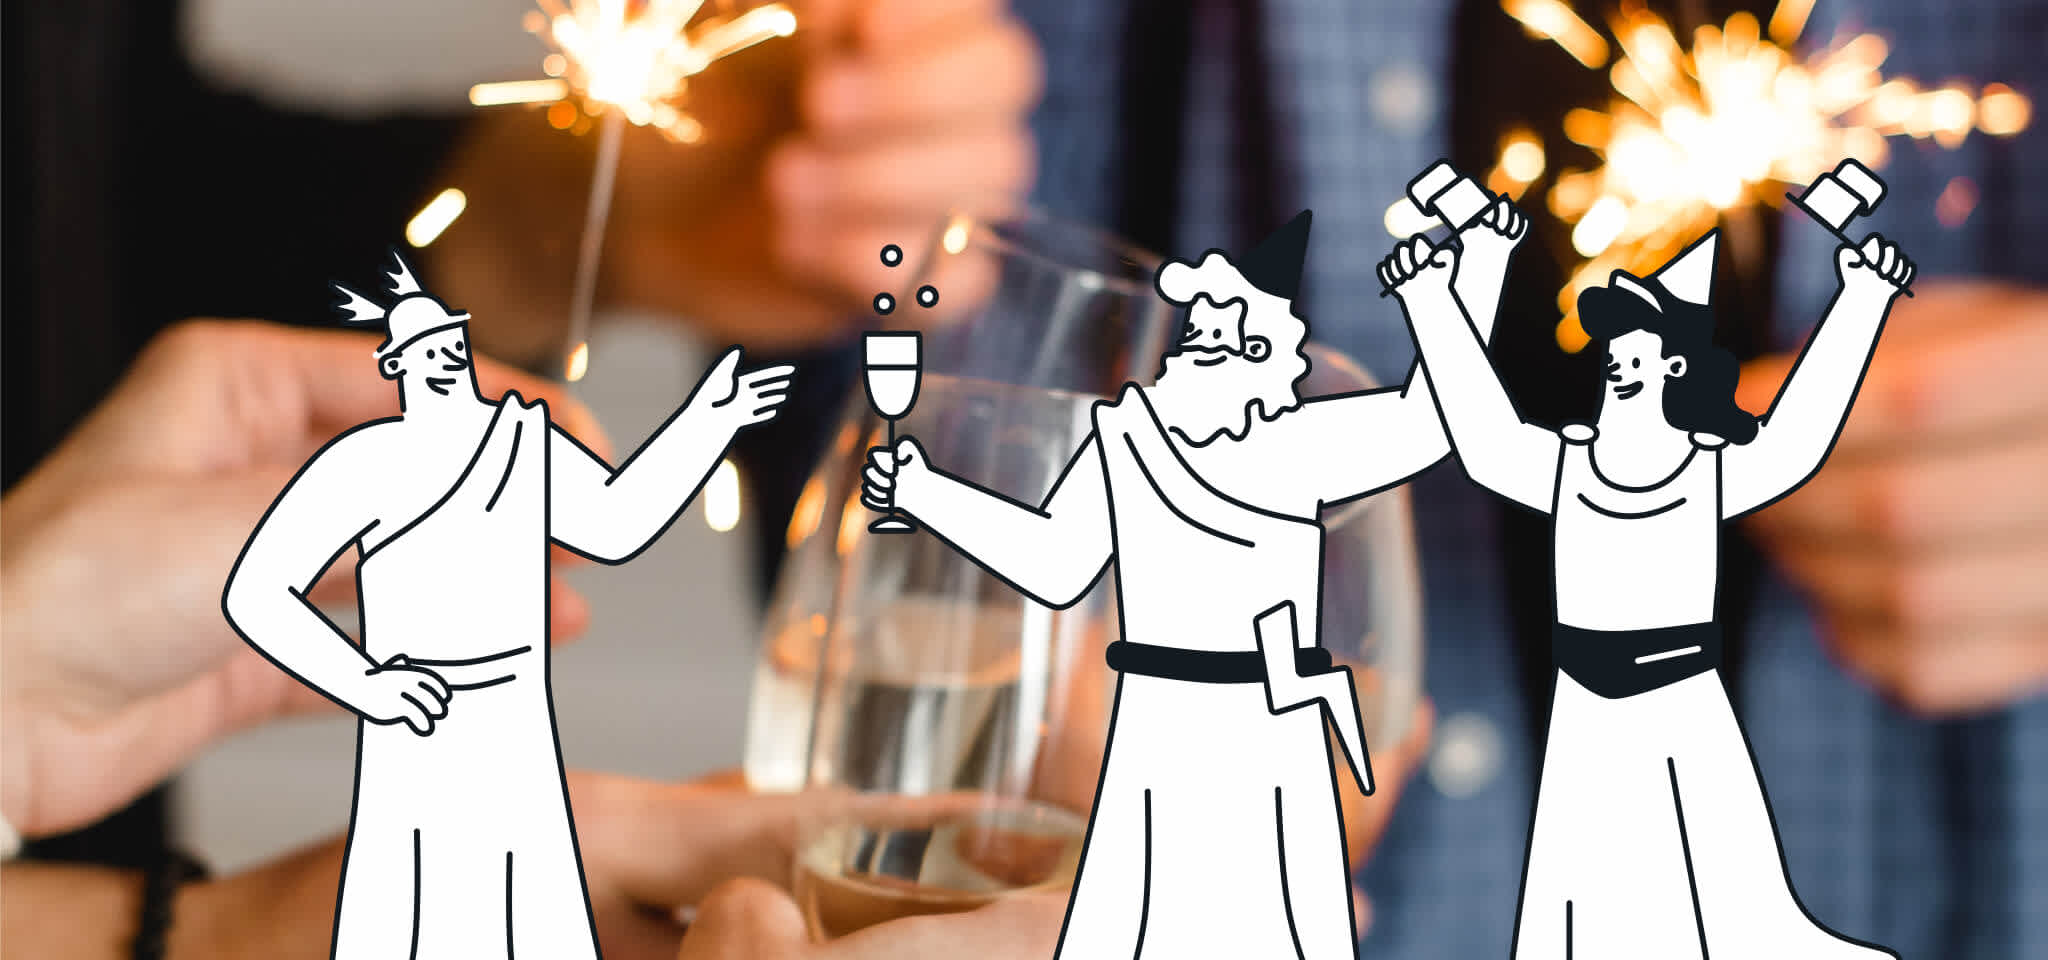 Drei Götter feiern mit einigen Drinks